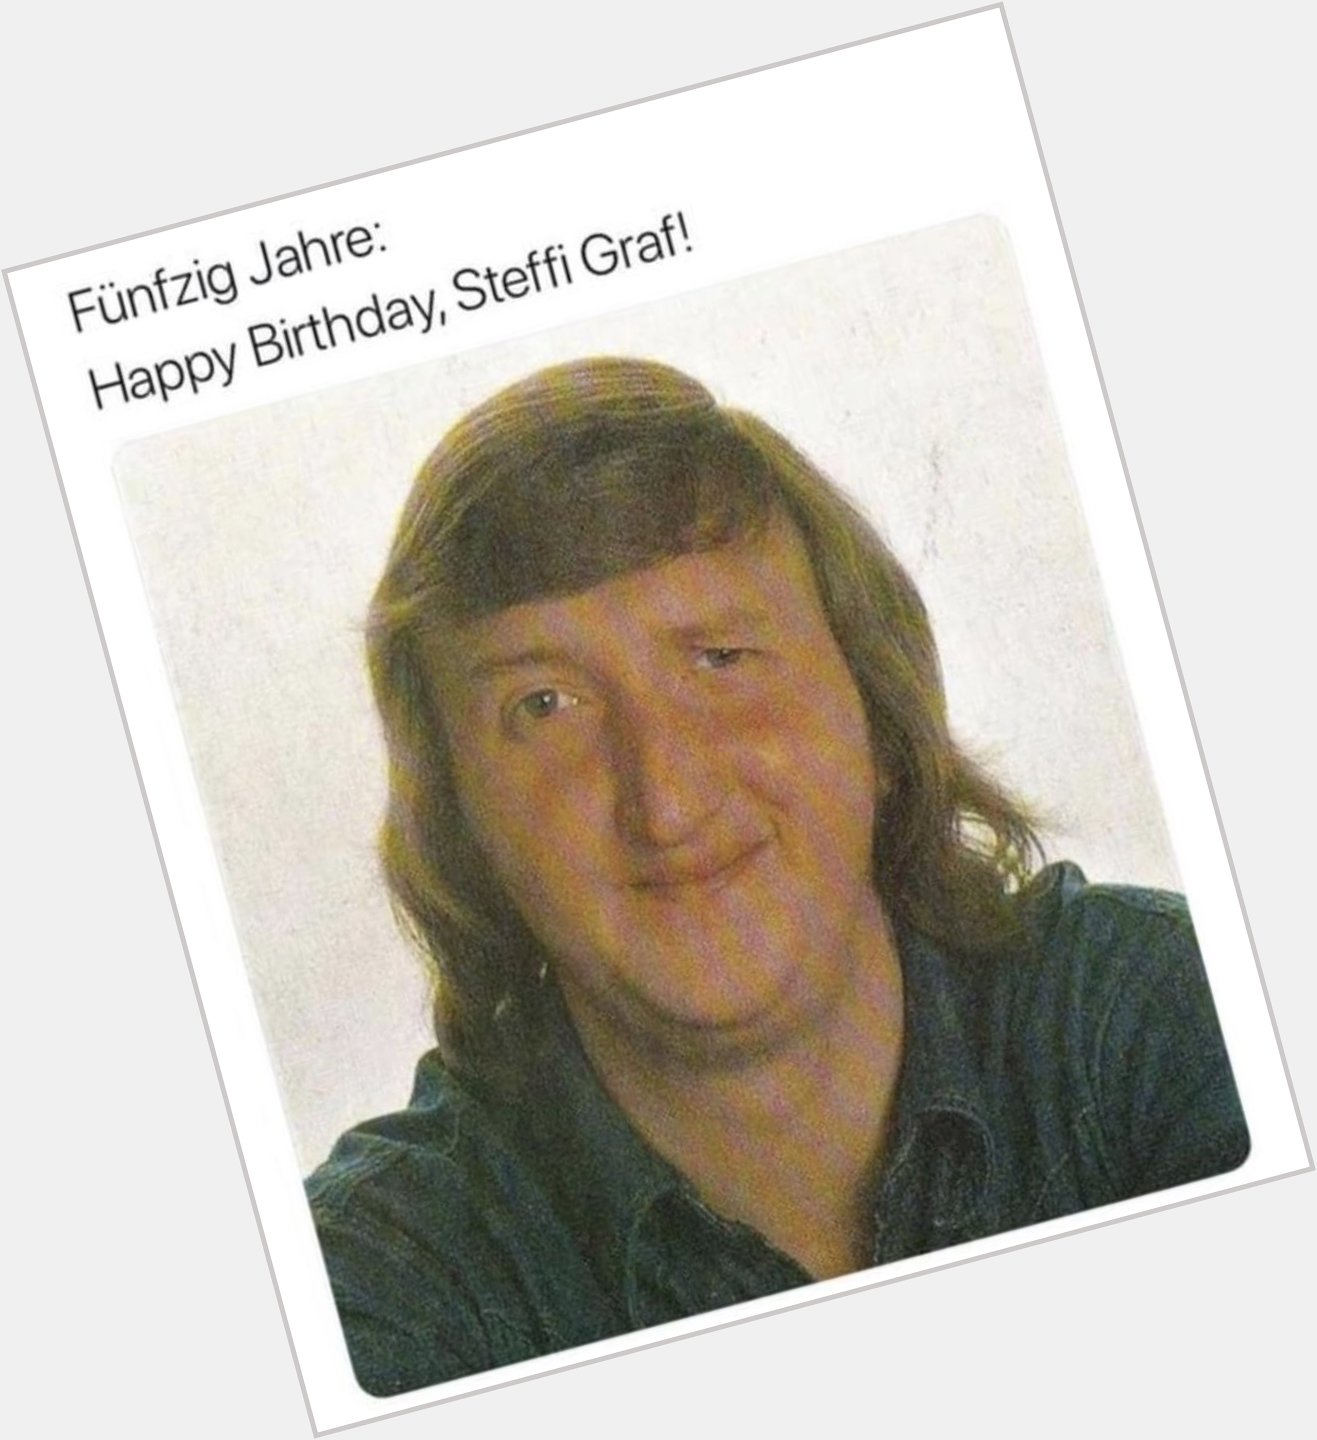 Happy Birthday Steffi Graf   